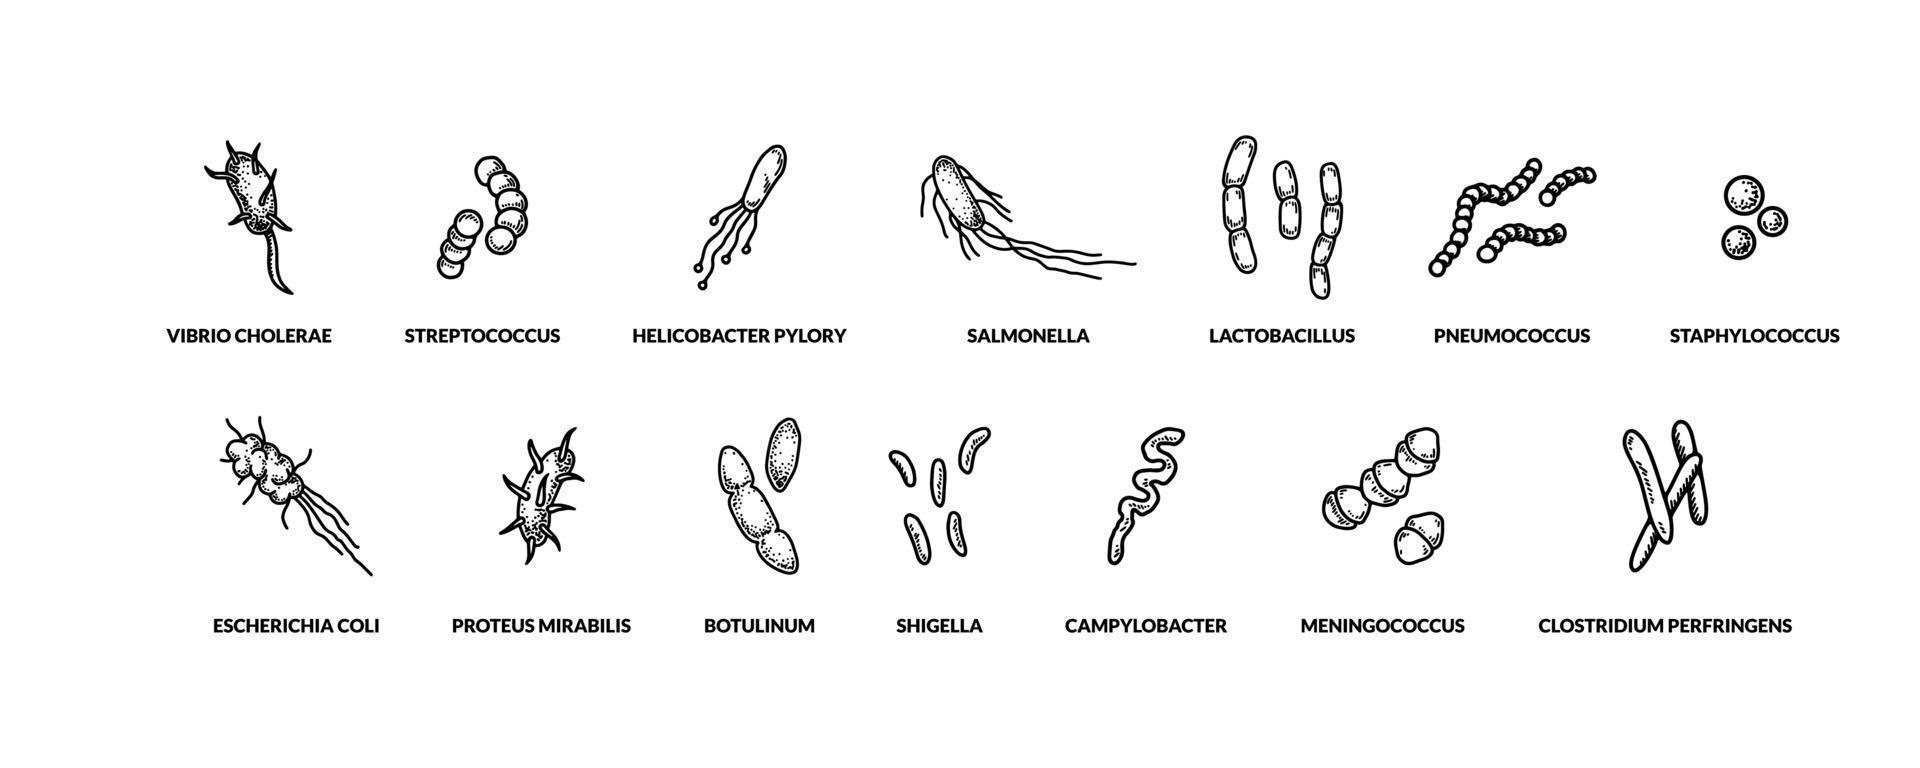 ensemble de différents types de bactreias dessinés à la main. illustration vectorielle dans le style de croquis. dessin scientifique réaliste vecteur